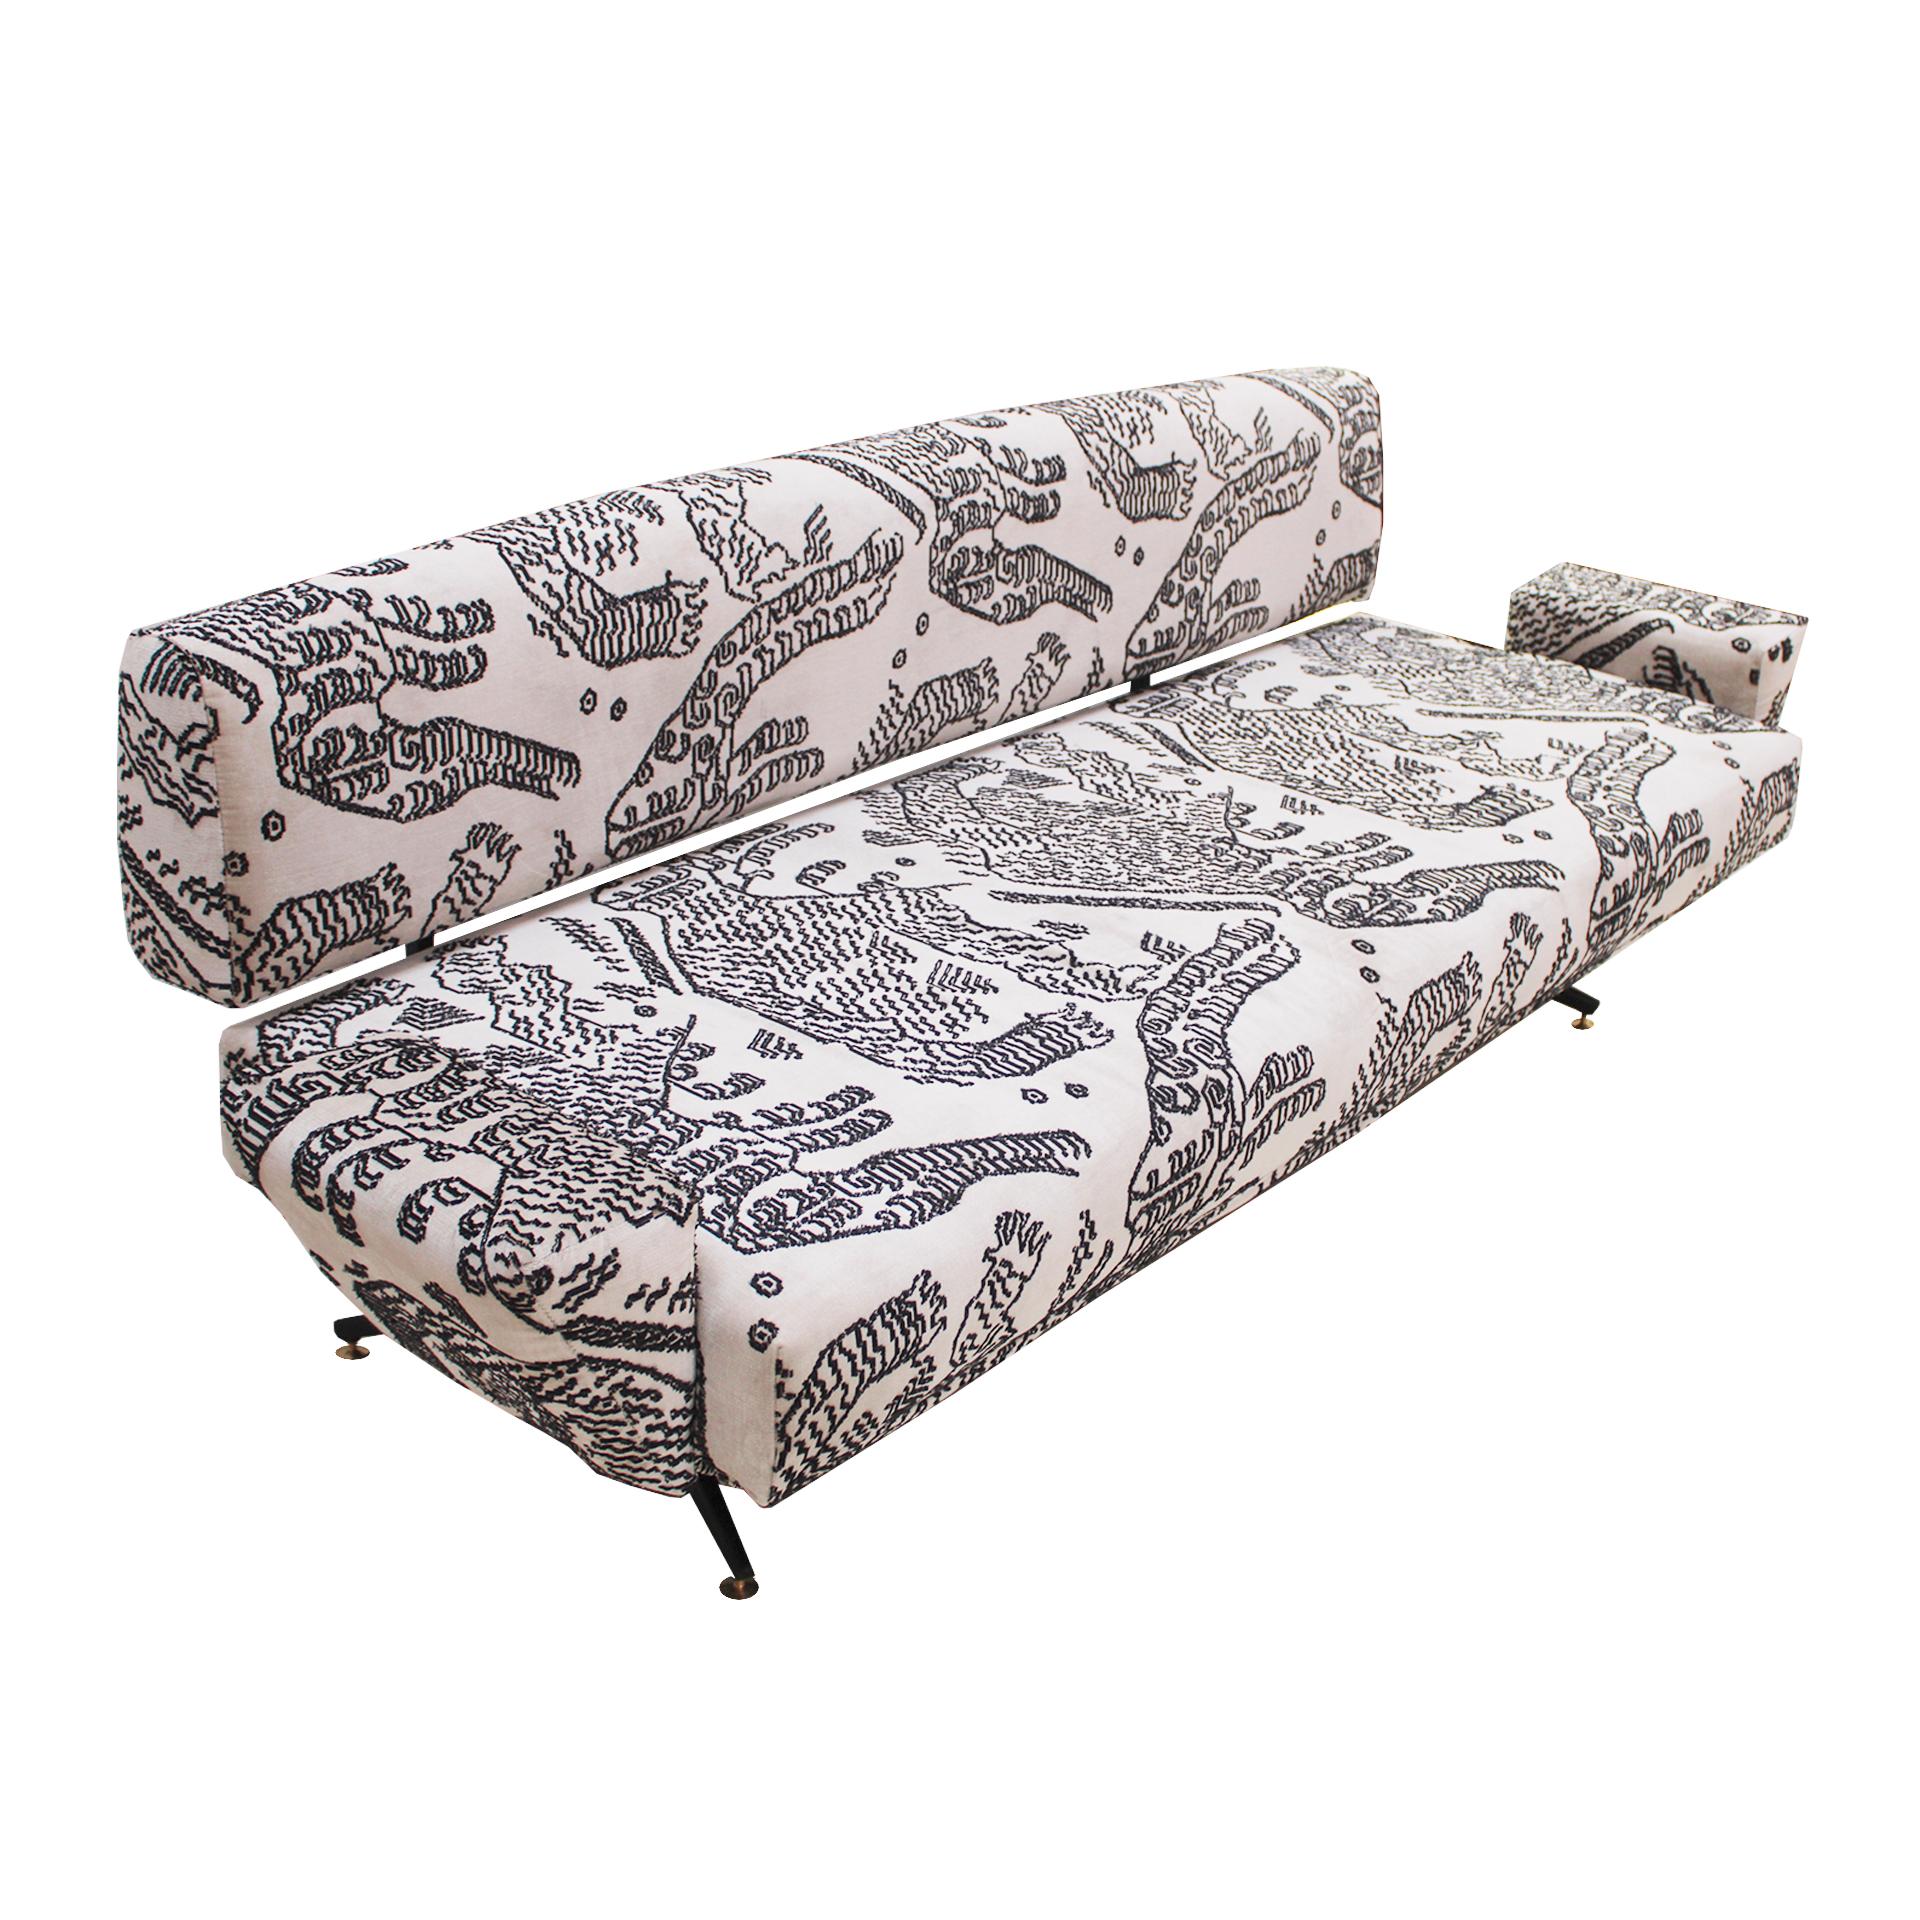 Ce canapé italien des années 1950 est doté d'une structure métallique élégante. Son revêtement en tissu de coton, avec le design 